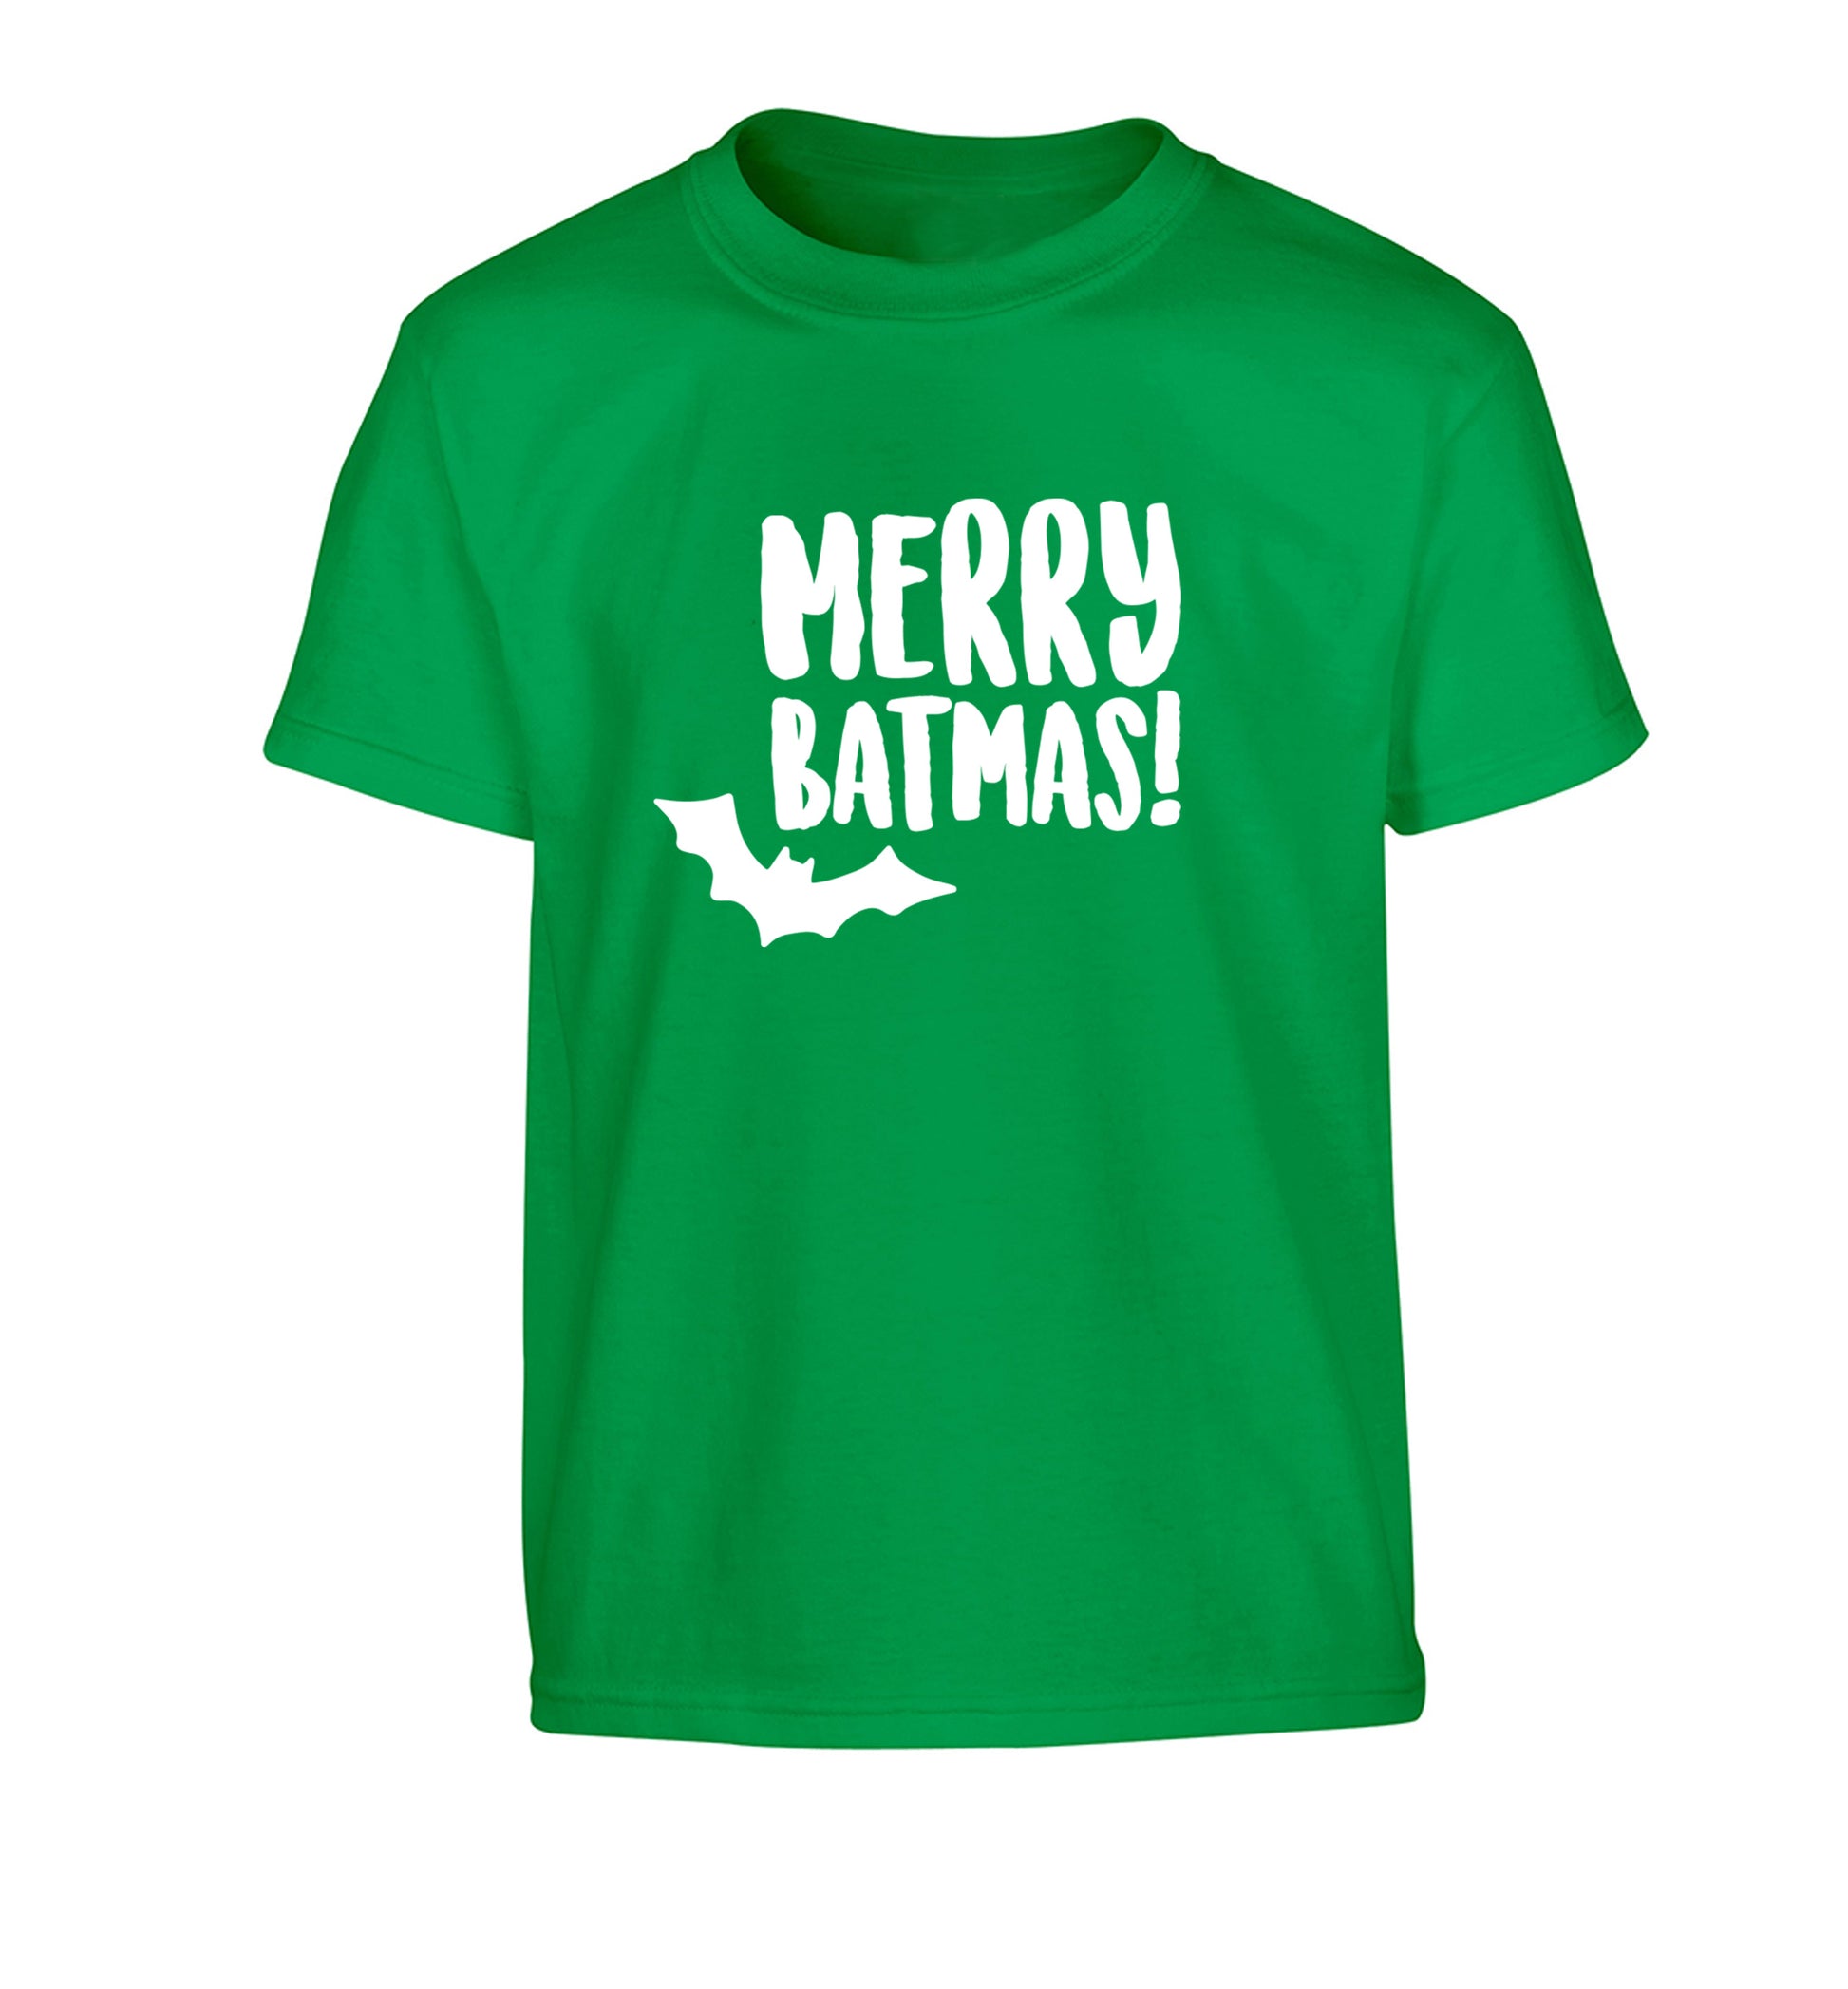 Merry Batmas Children's green Tshirt 12-14 Years